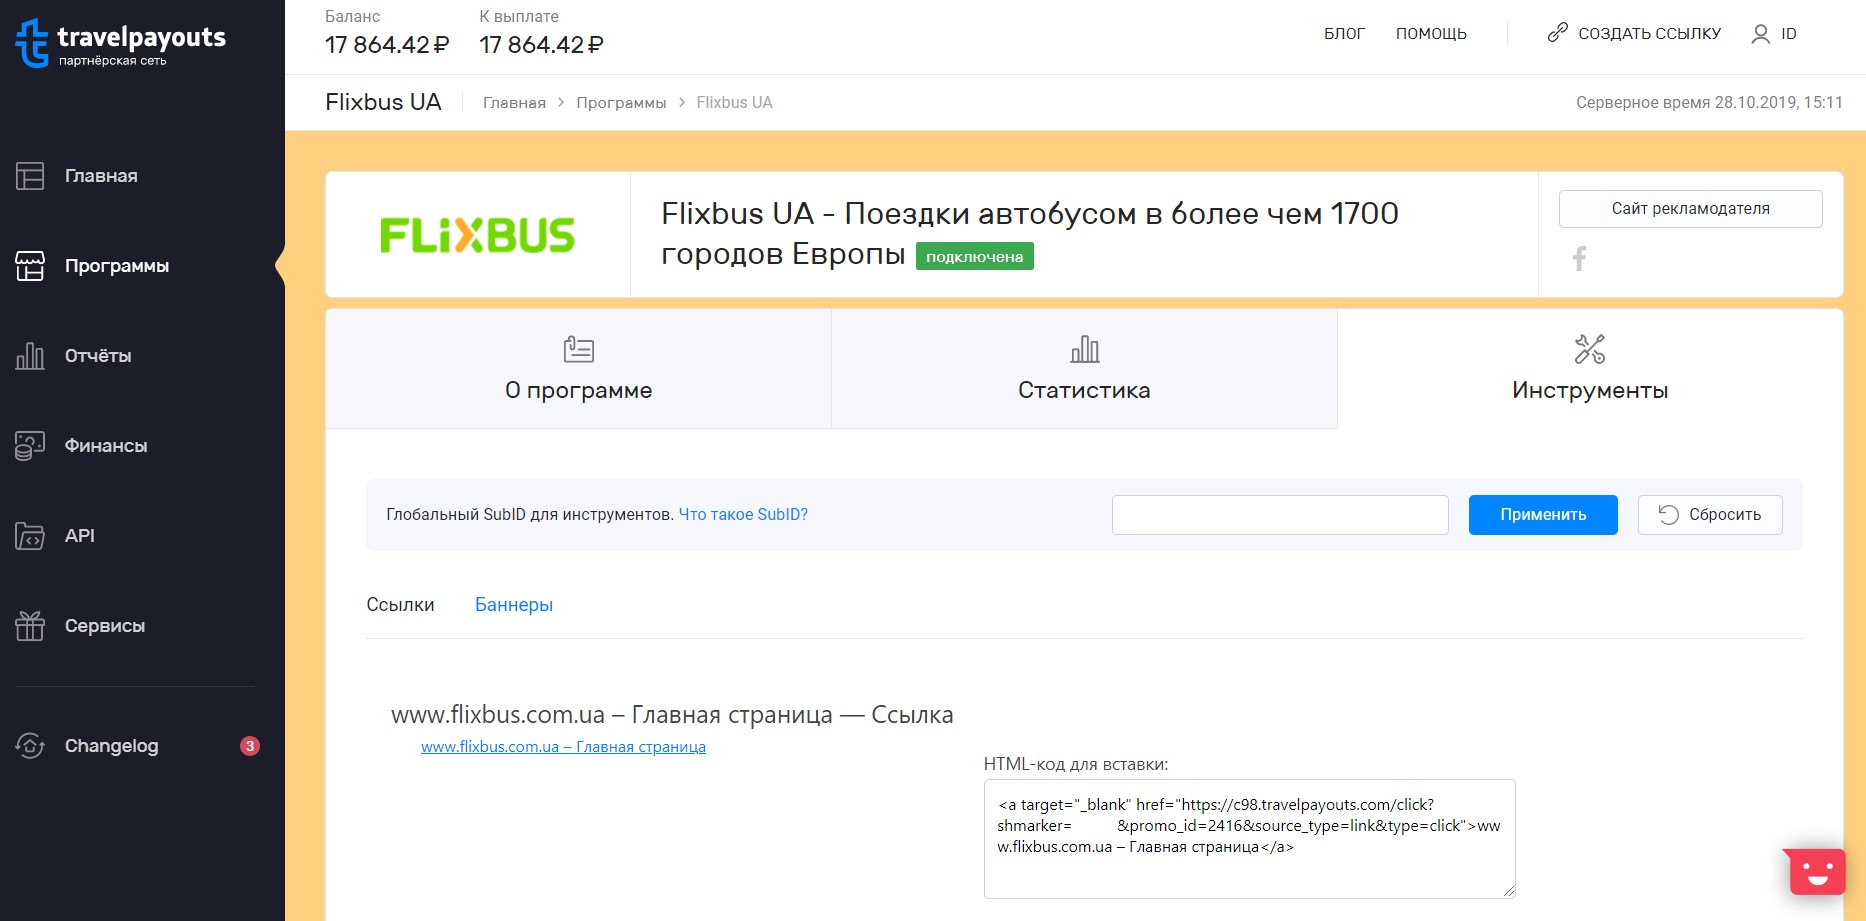 FlixBus UA